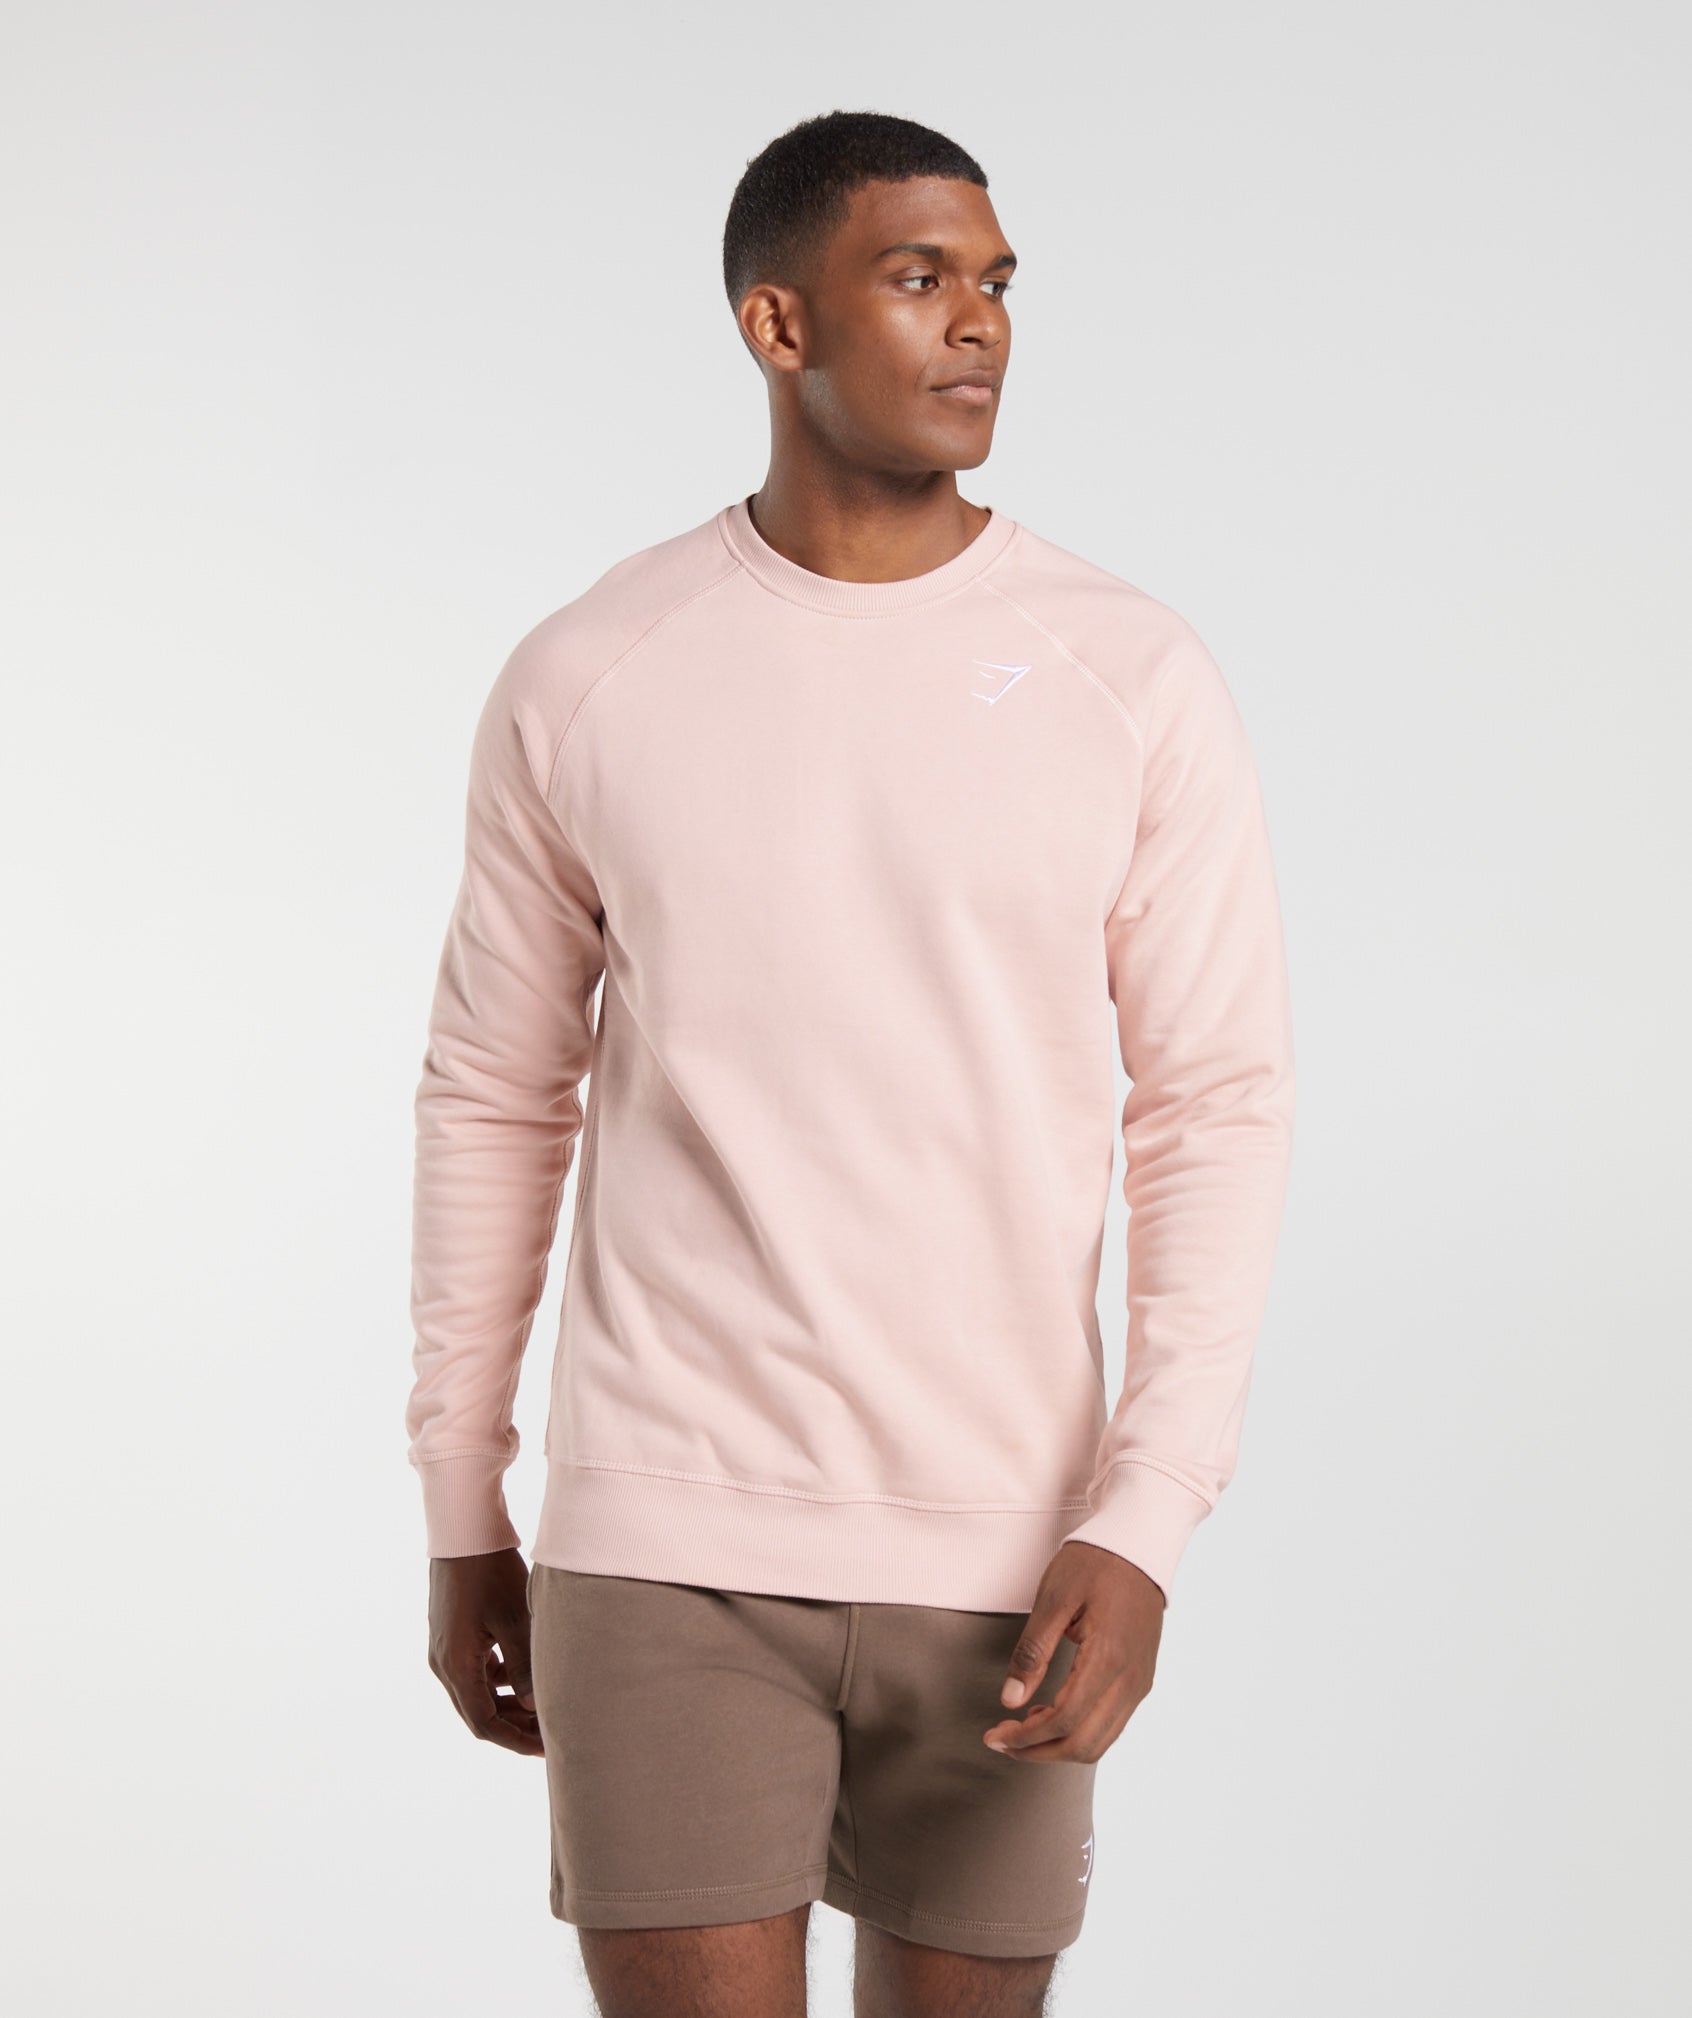 Crest Sweatshirt in Misty Pink - view 3